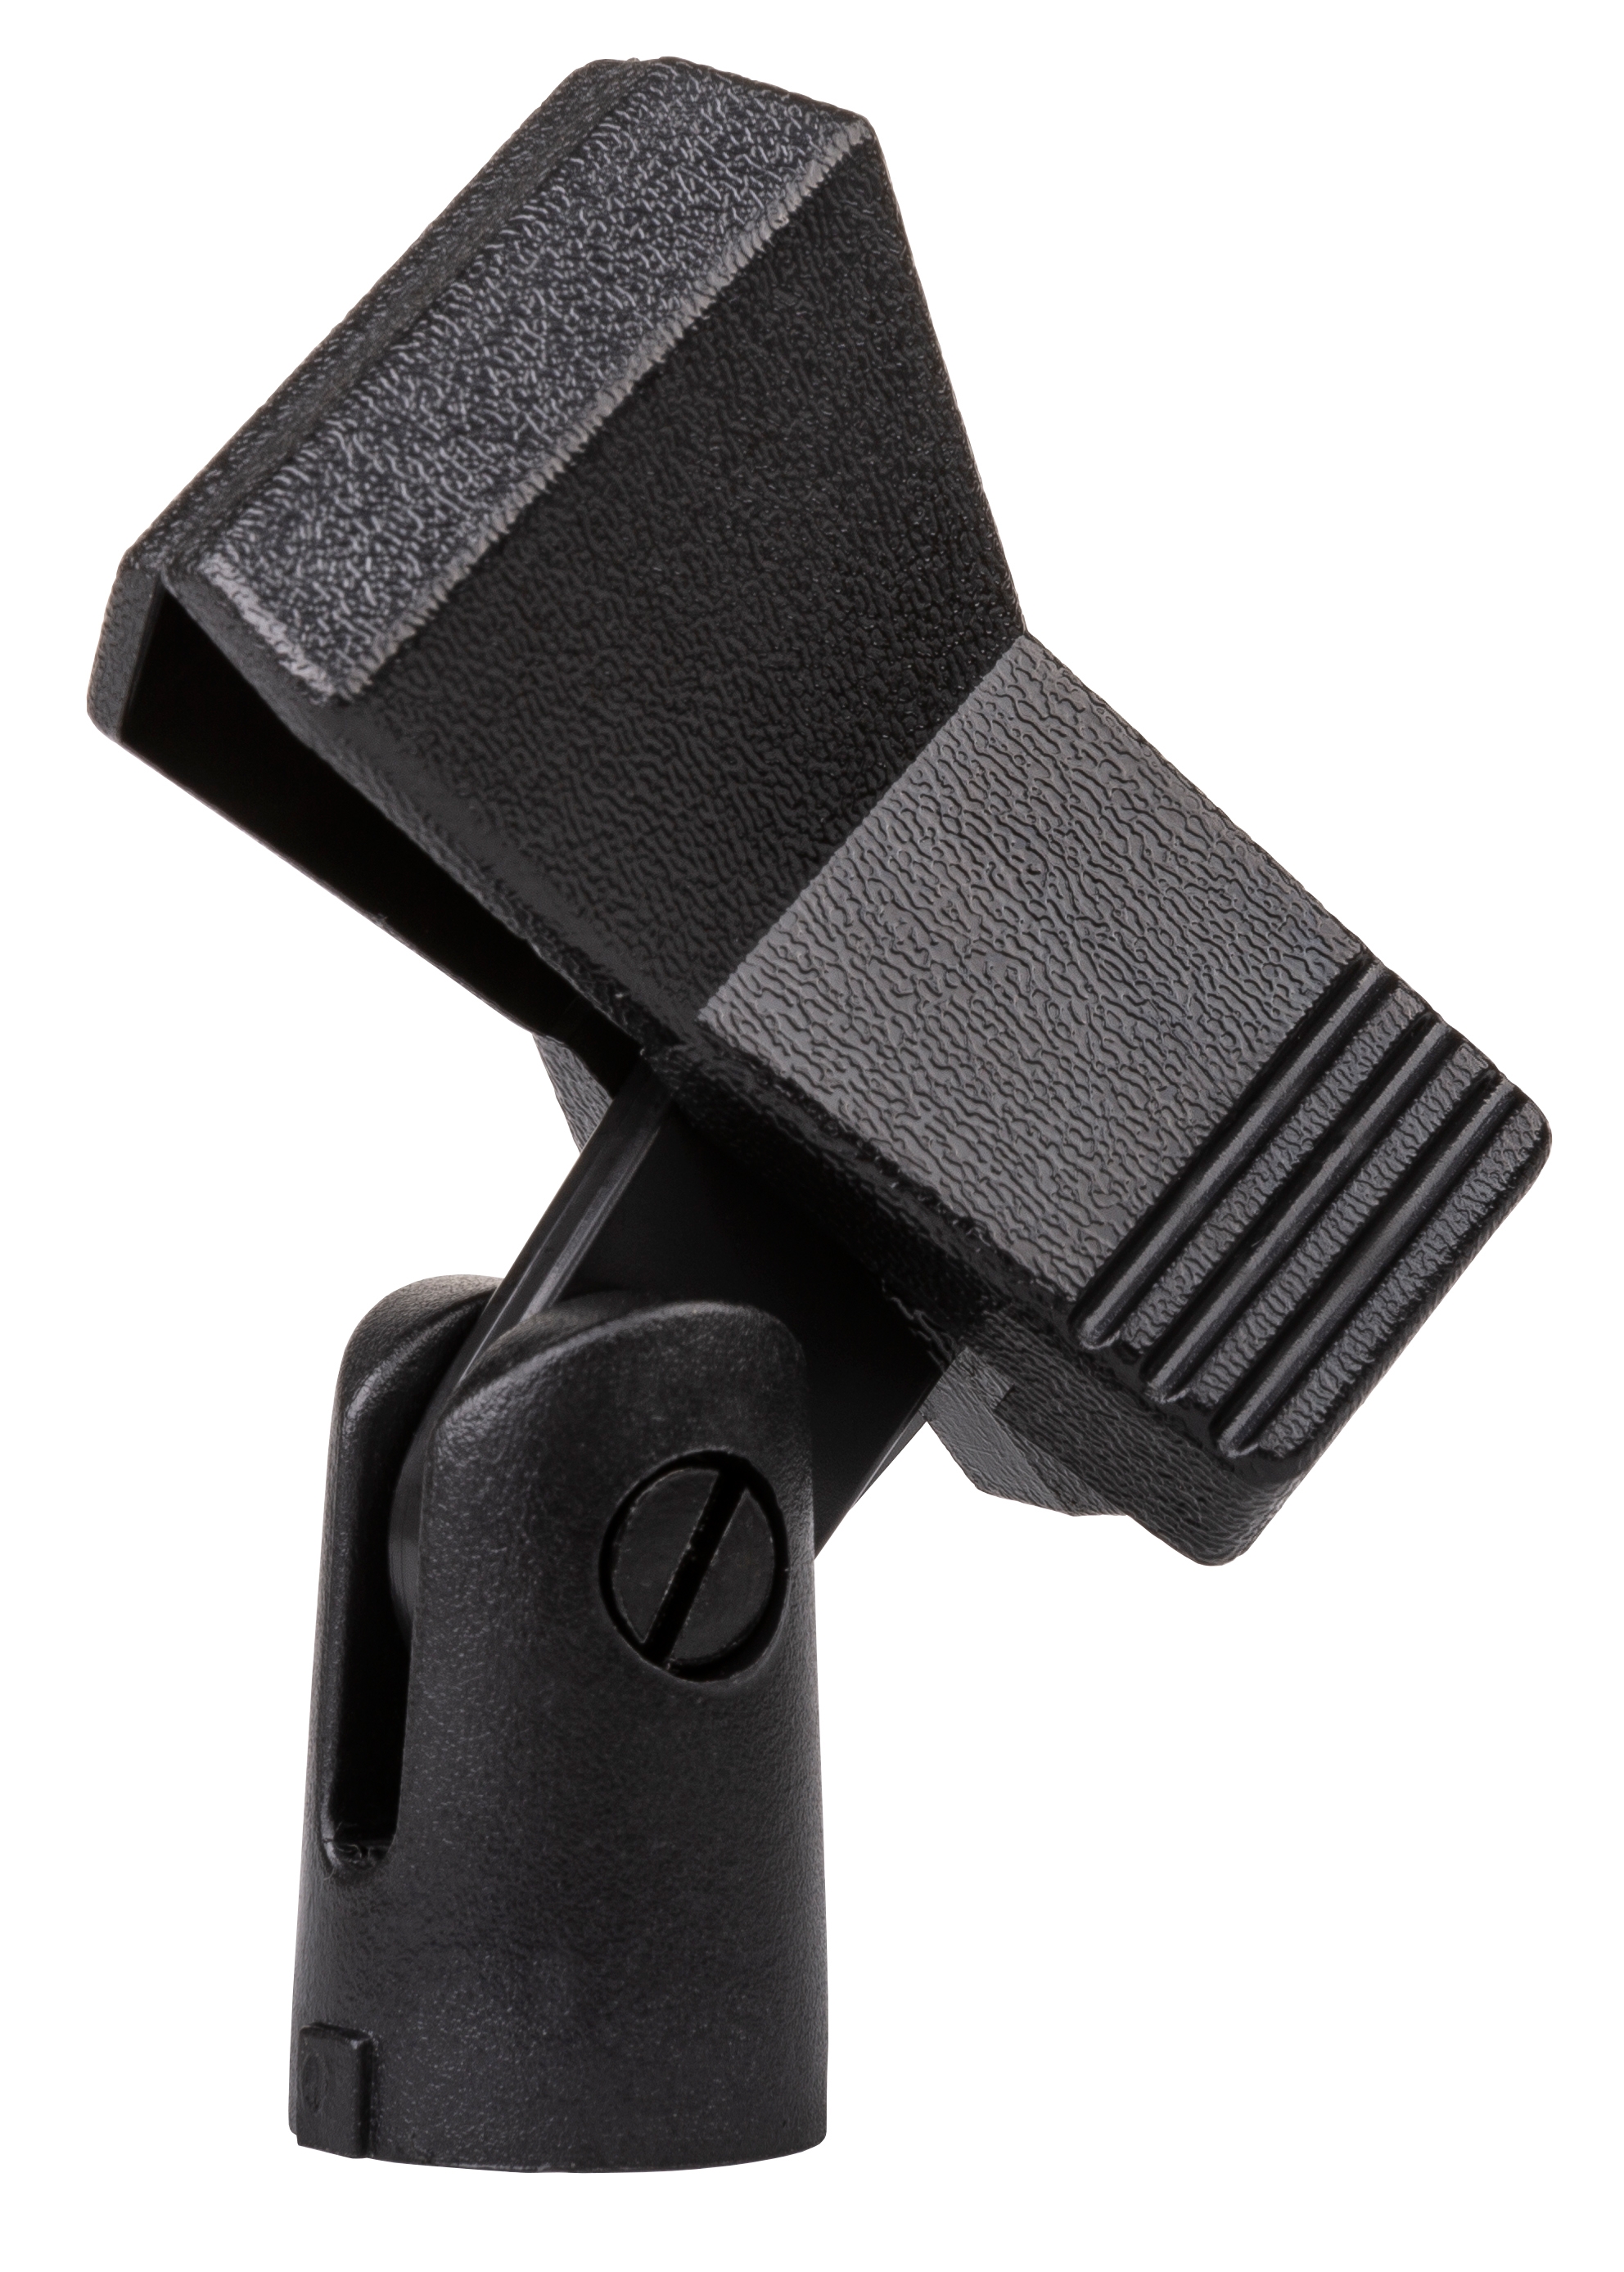 Support de microphone avec mécanisme à ressort pour microphones à main avec ou sans fil